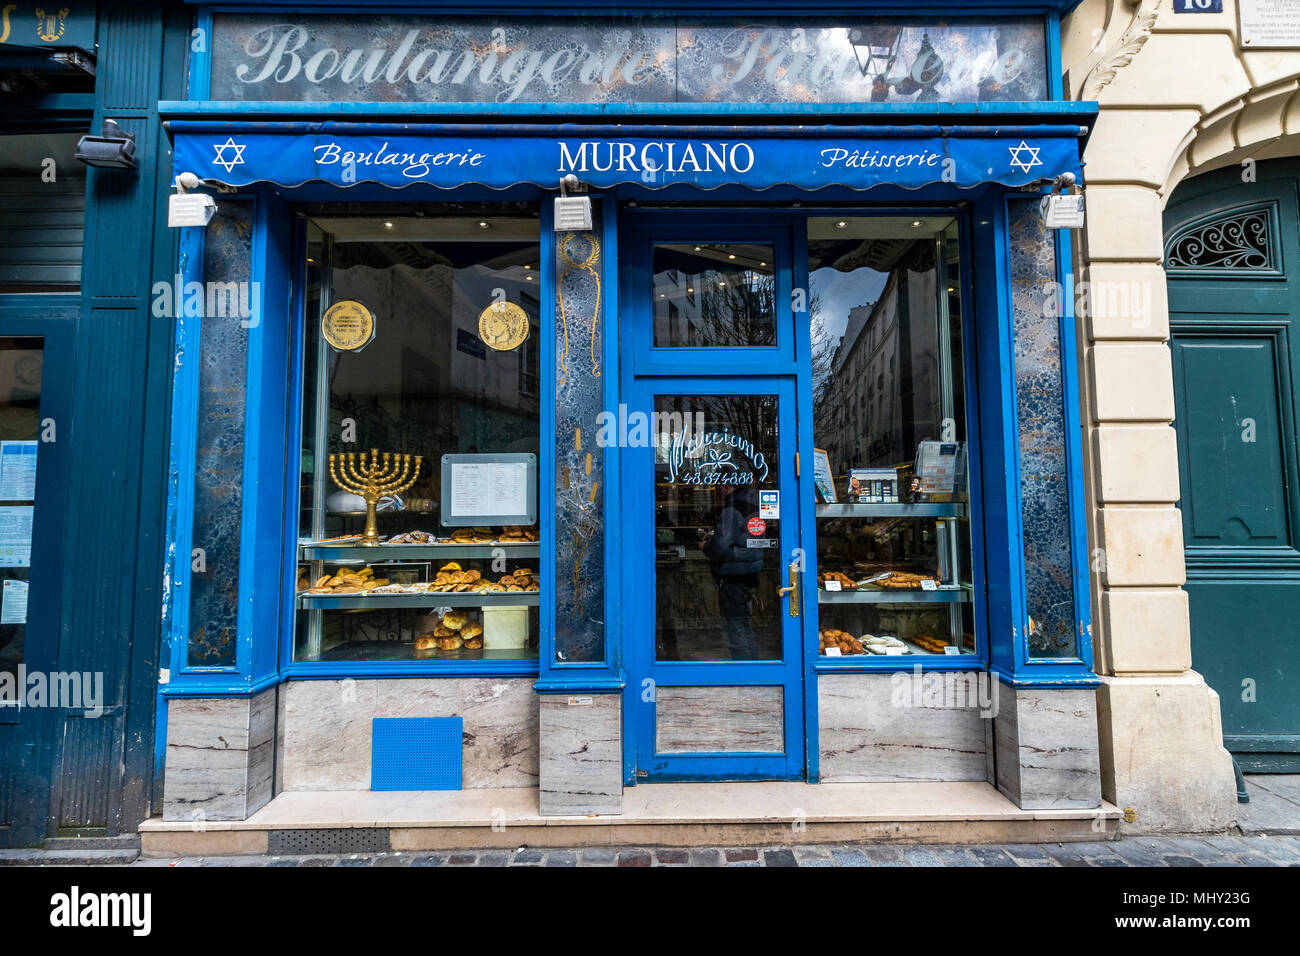 Murciano Patisserie-Boulangerie 14 rue des Rosiers in Le Marais district of Paris Stock Photo